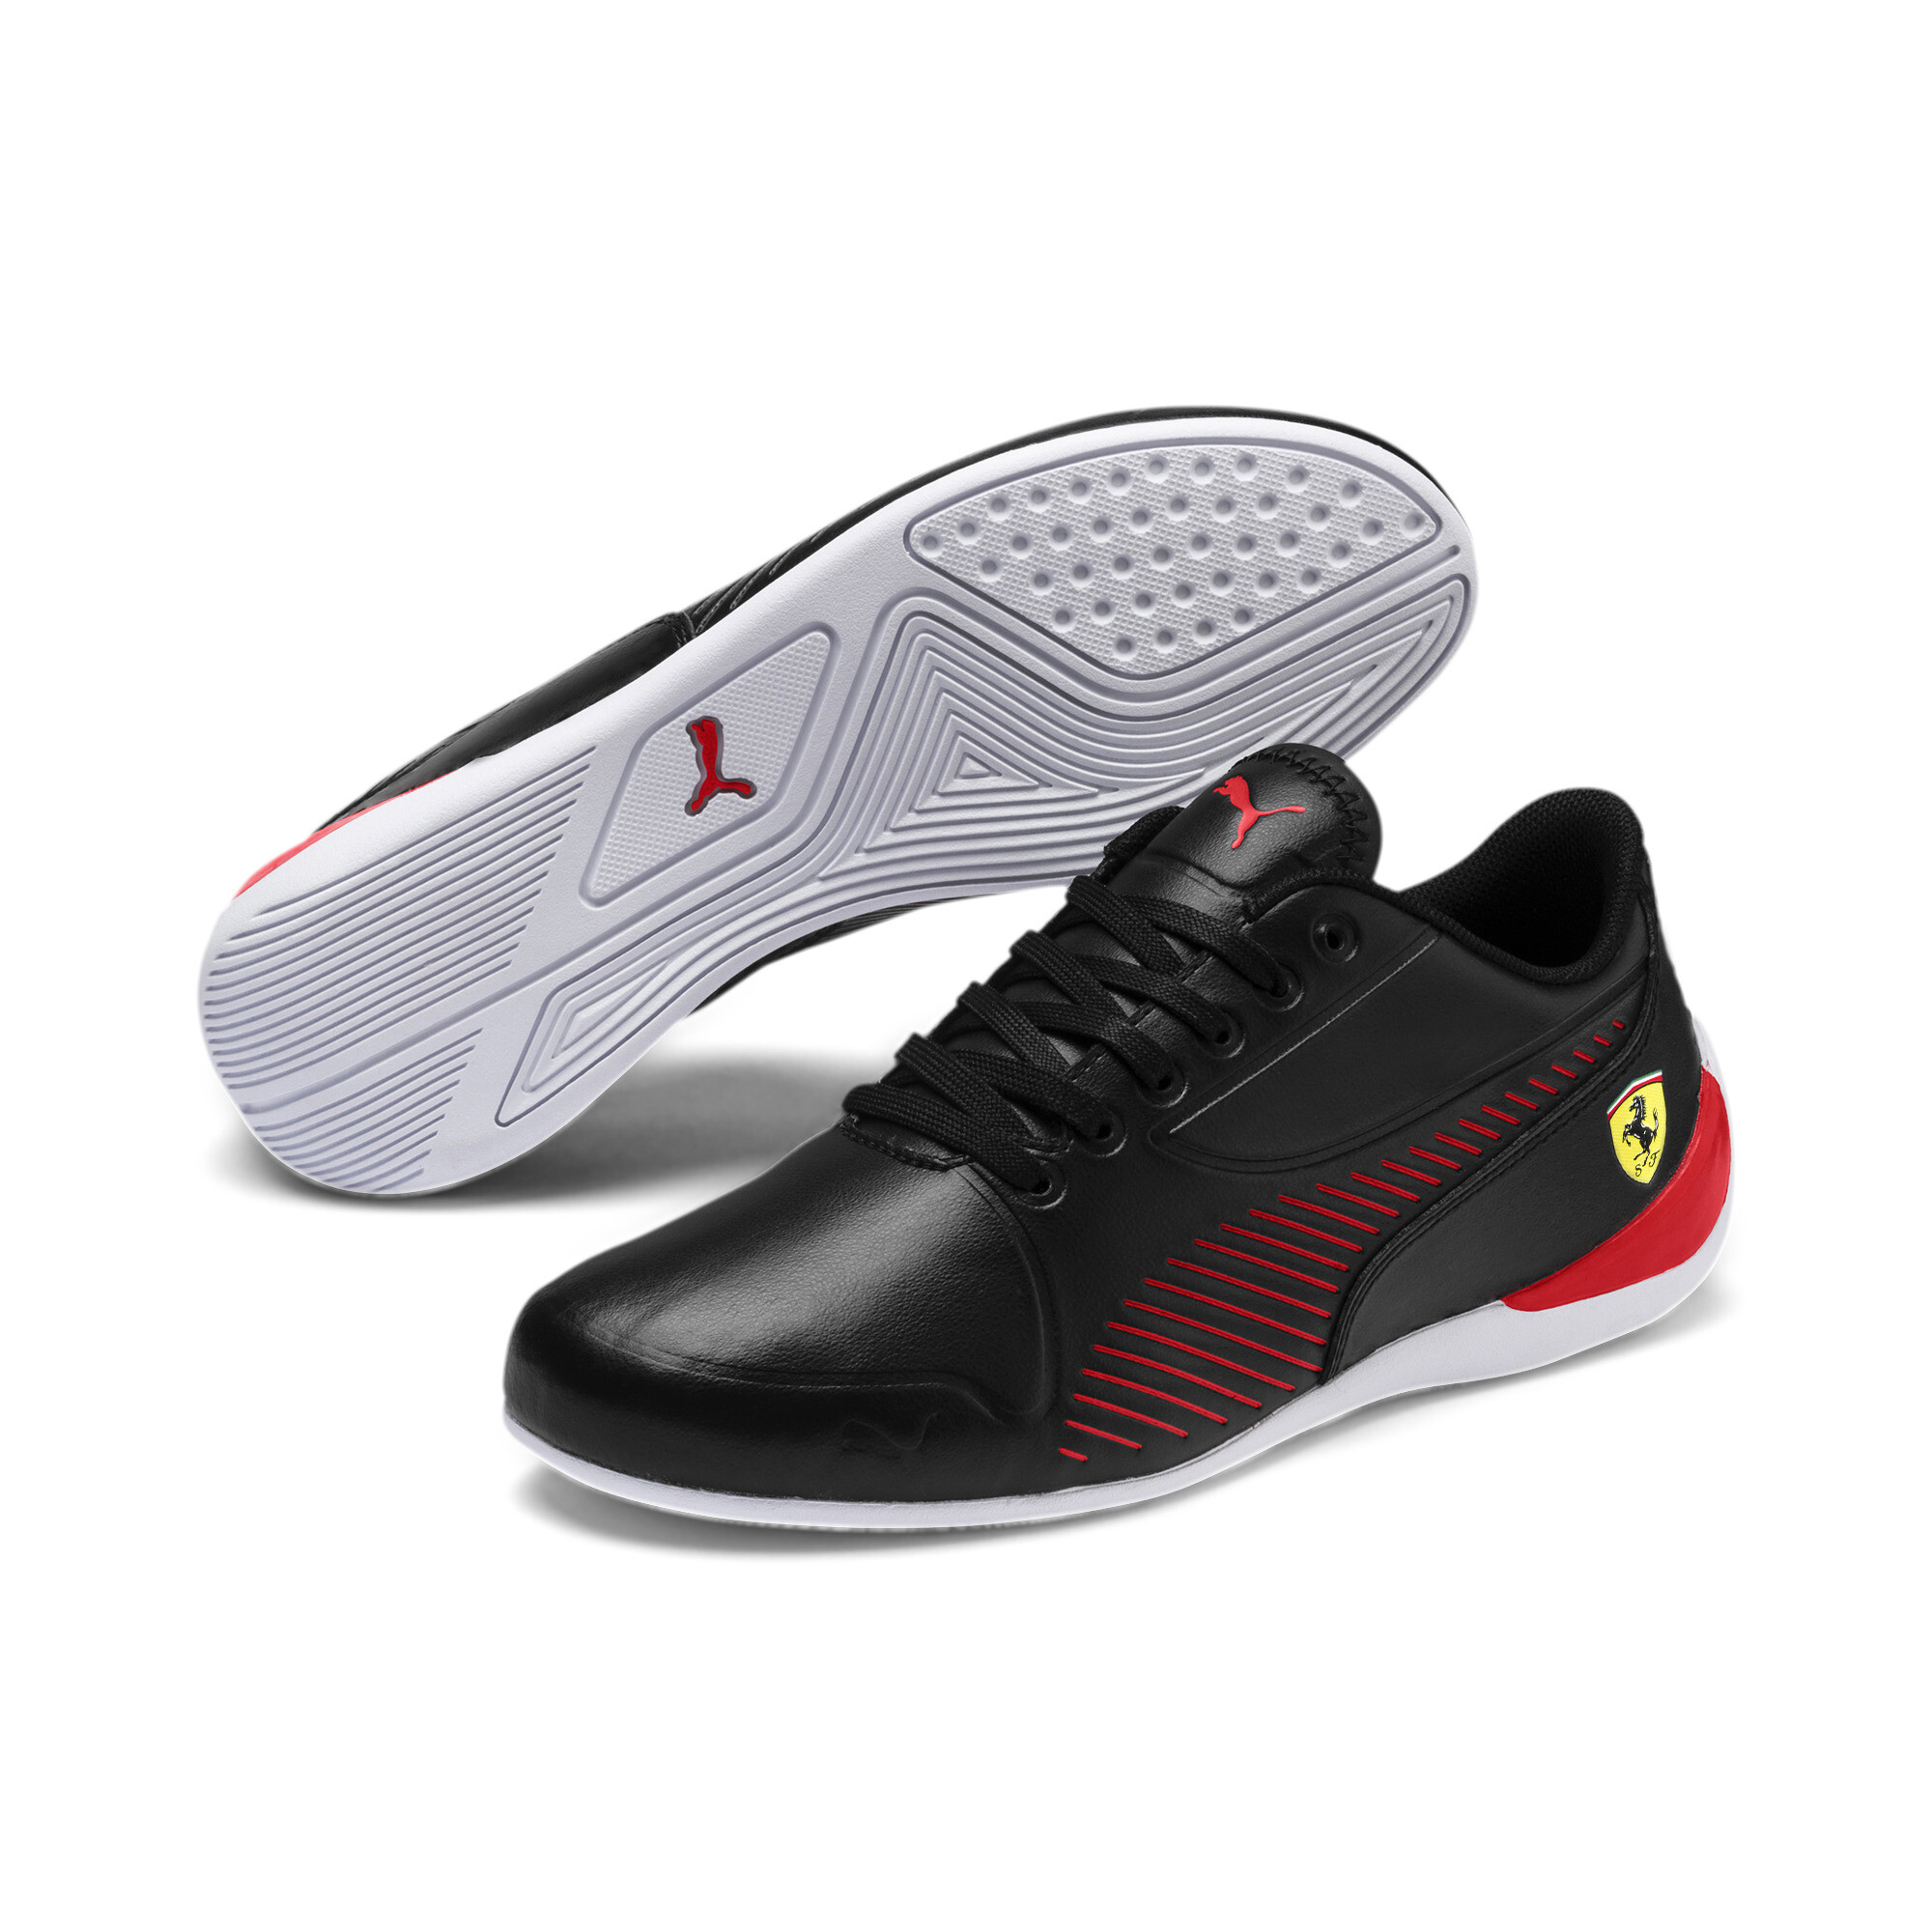 PUMA Scuderia Ferrari Drift Cat 7S Ultra Shoes JR Kids Shoe Auto | eBay